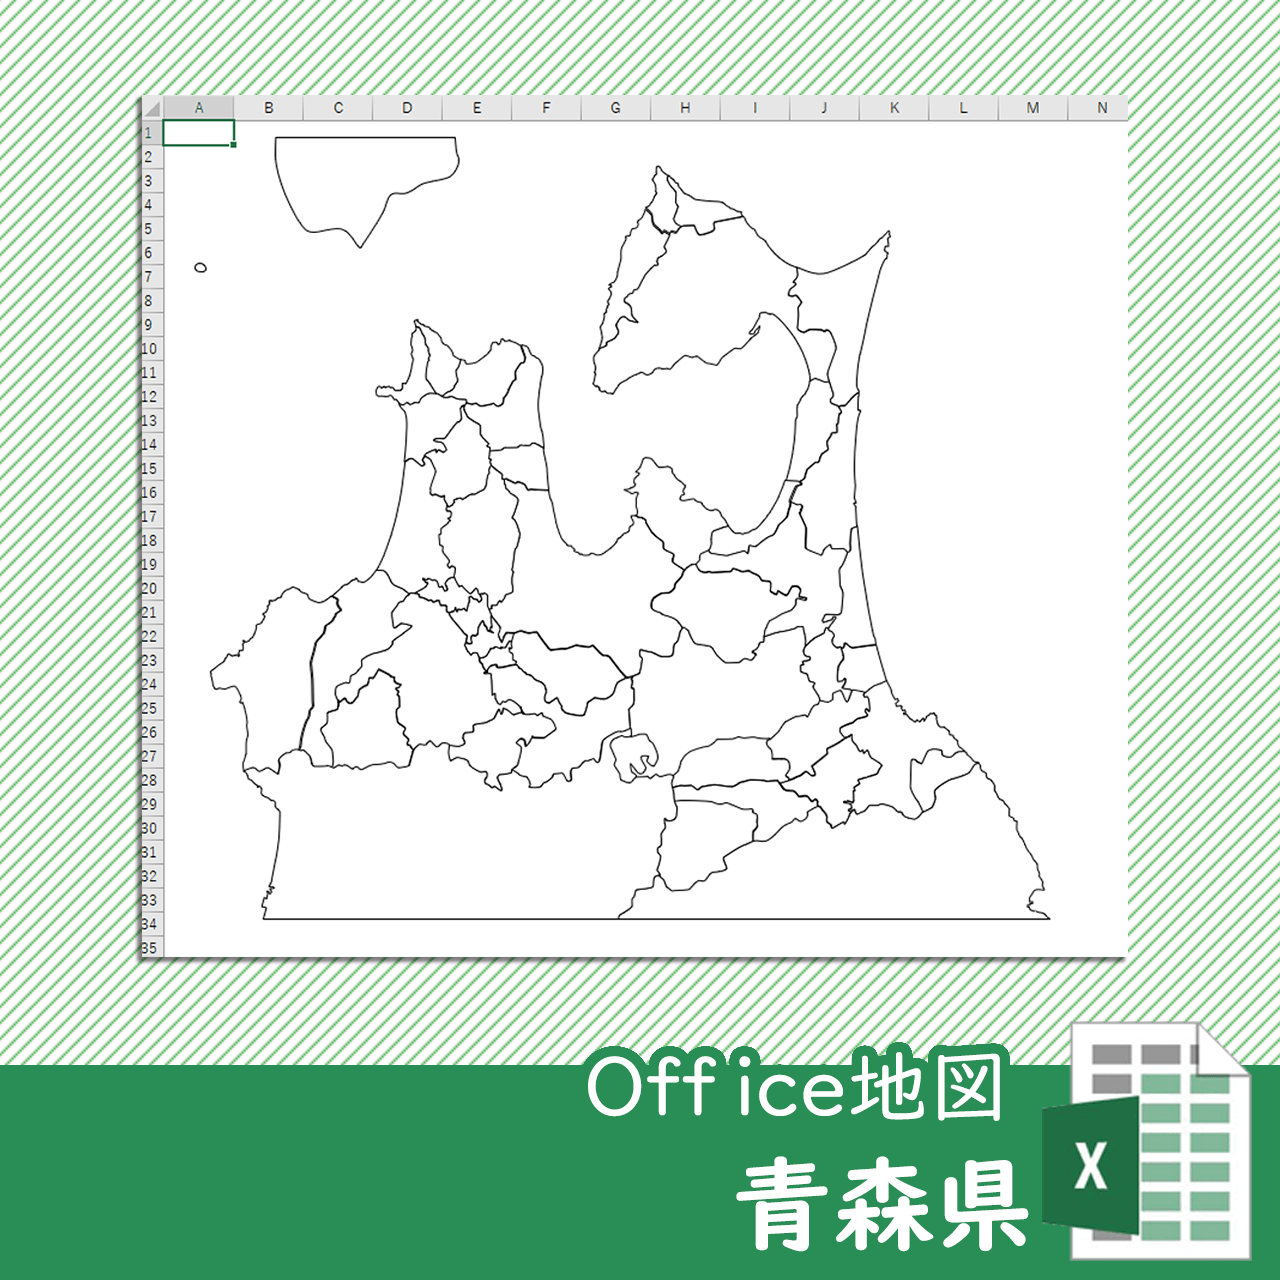 青森県のoffice地図 自動色塗り機能付き 白地図専門店